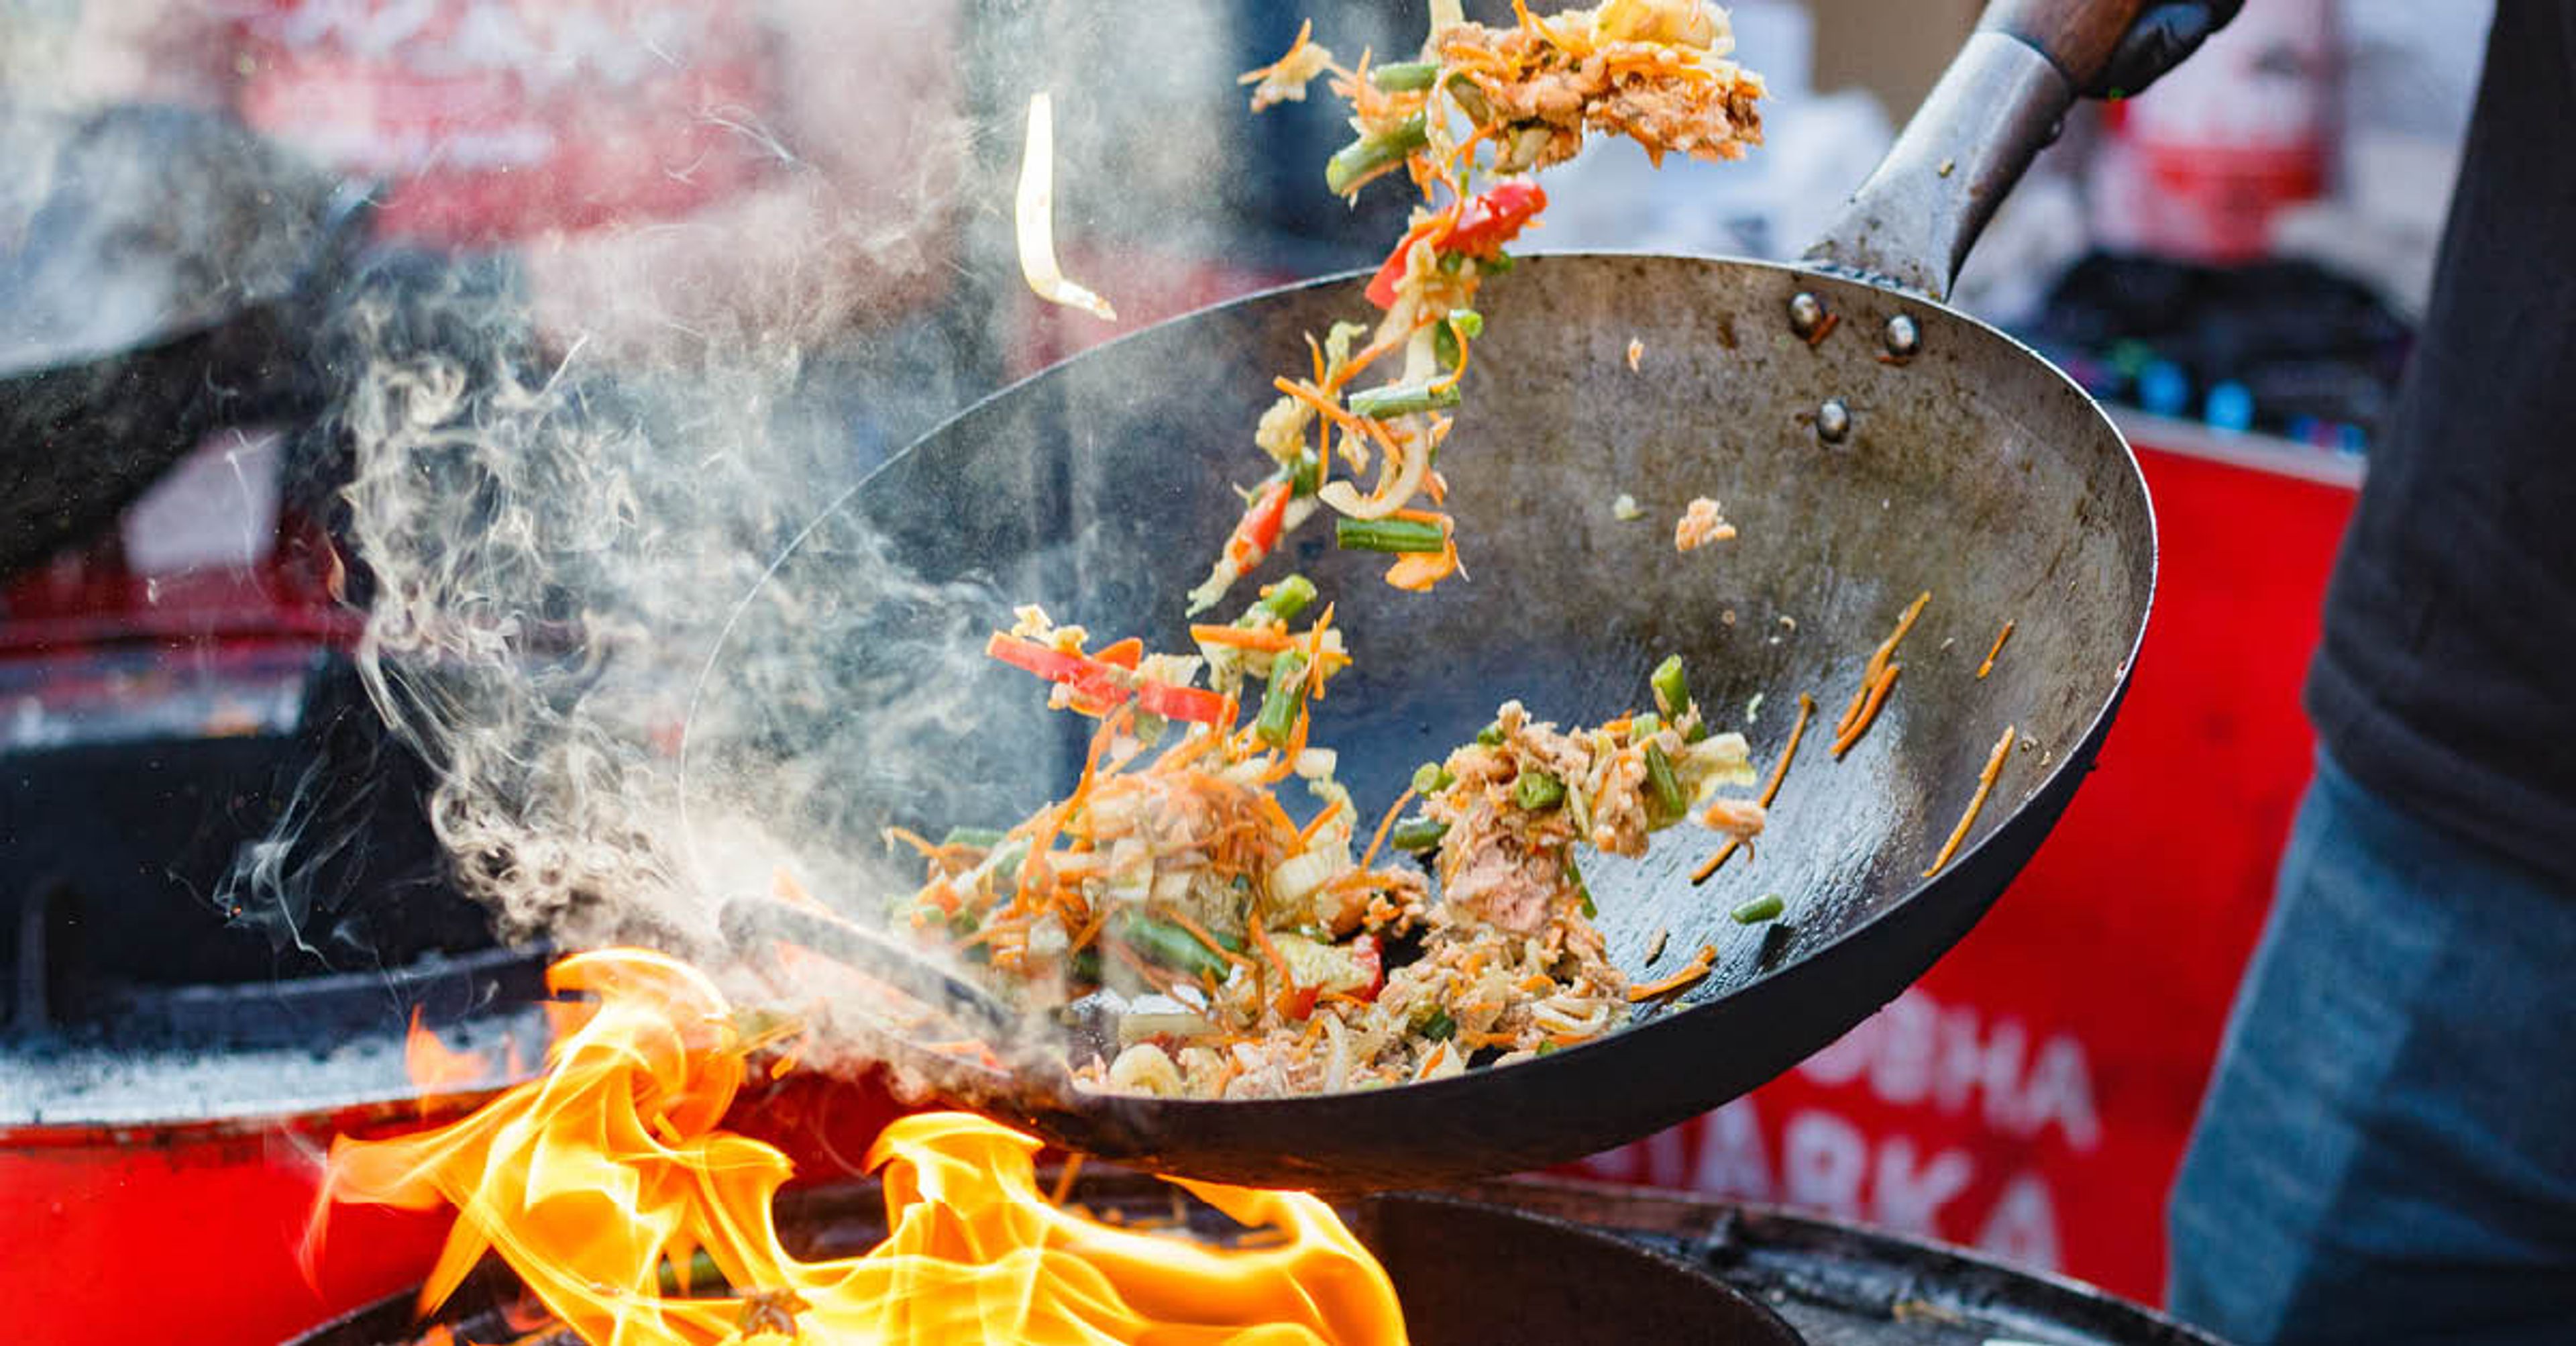 Laga mat med wok – med inspiration från Thailand